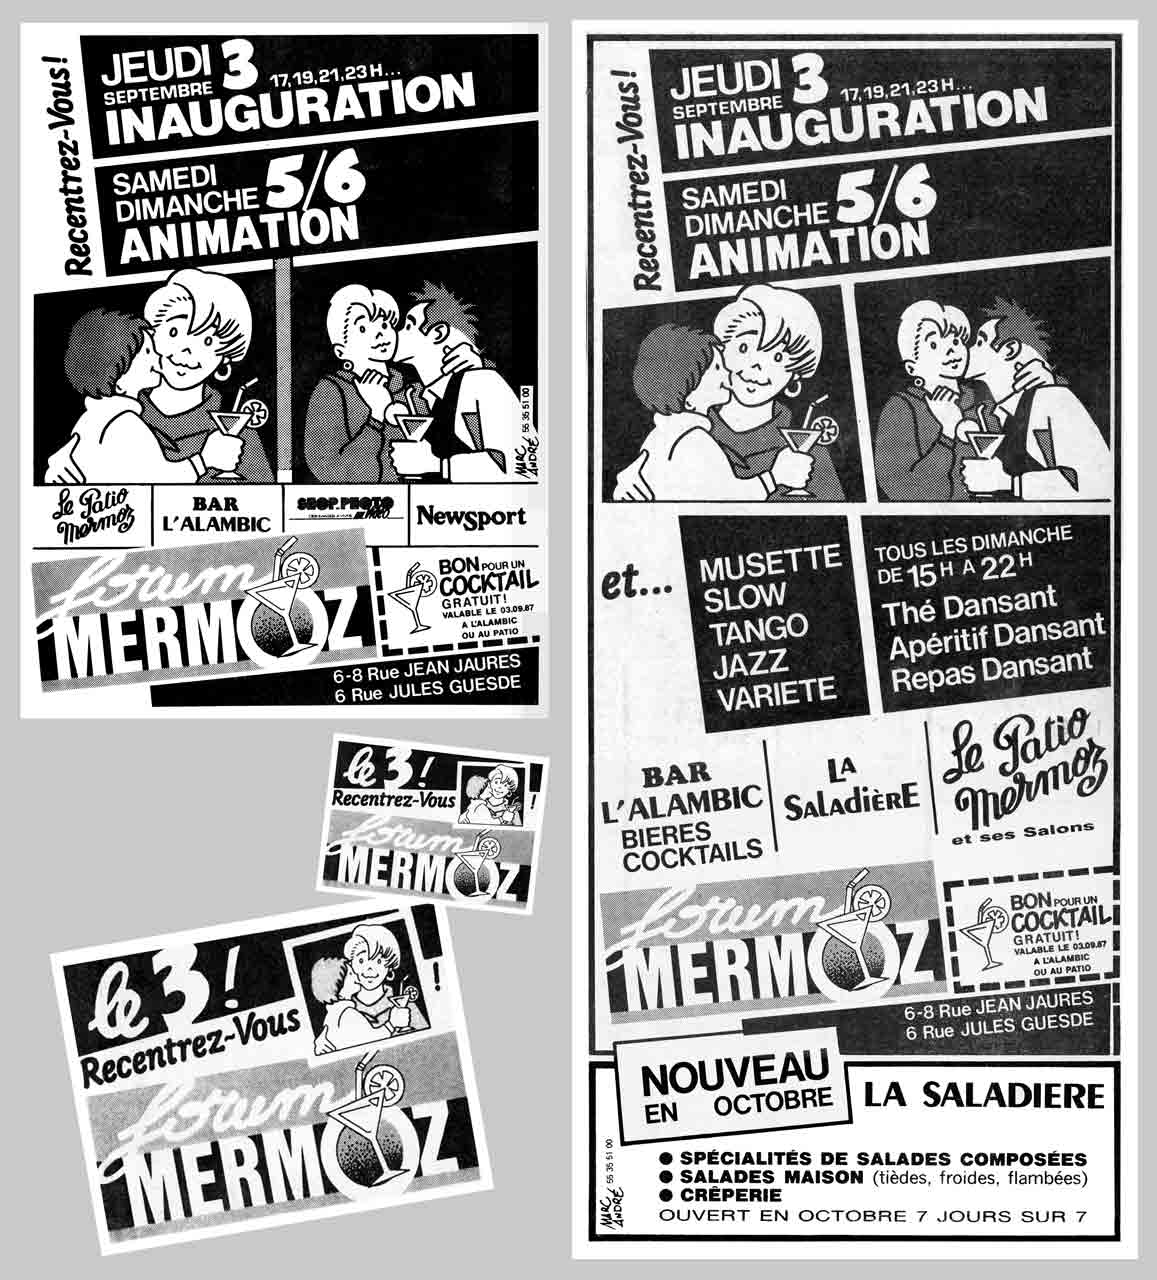 Le Forum Mermoz - Logo, pavés presse et affichettes pour l'inauguration le 3 septembre 1987 - Marc-André BD Illustration Graphisme Limoges